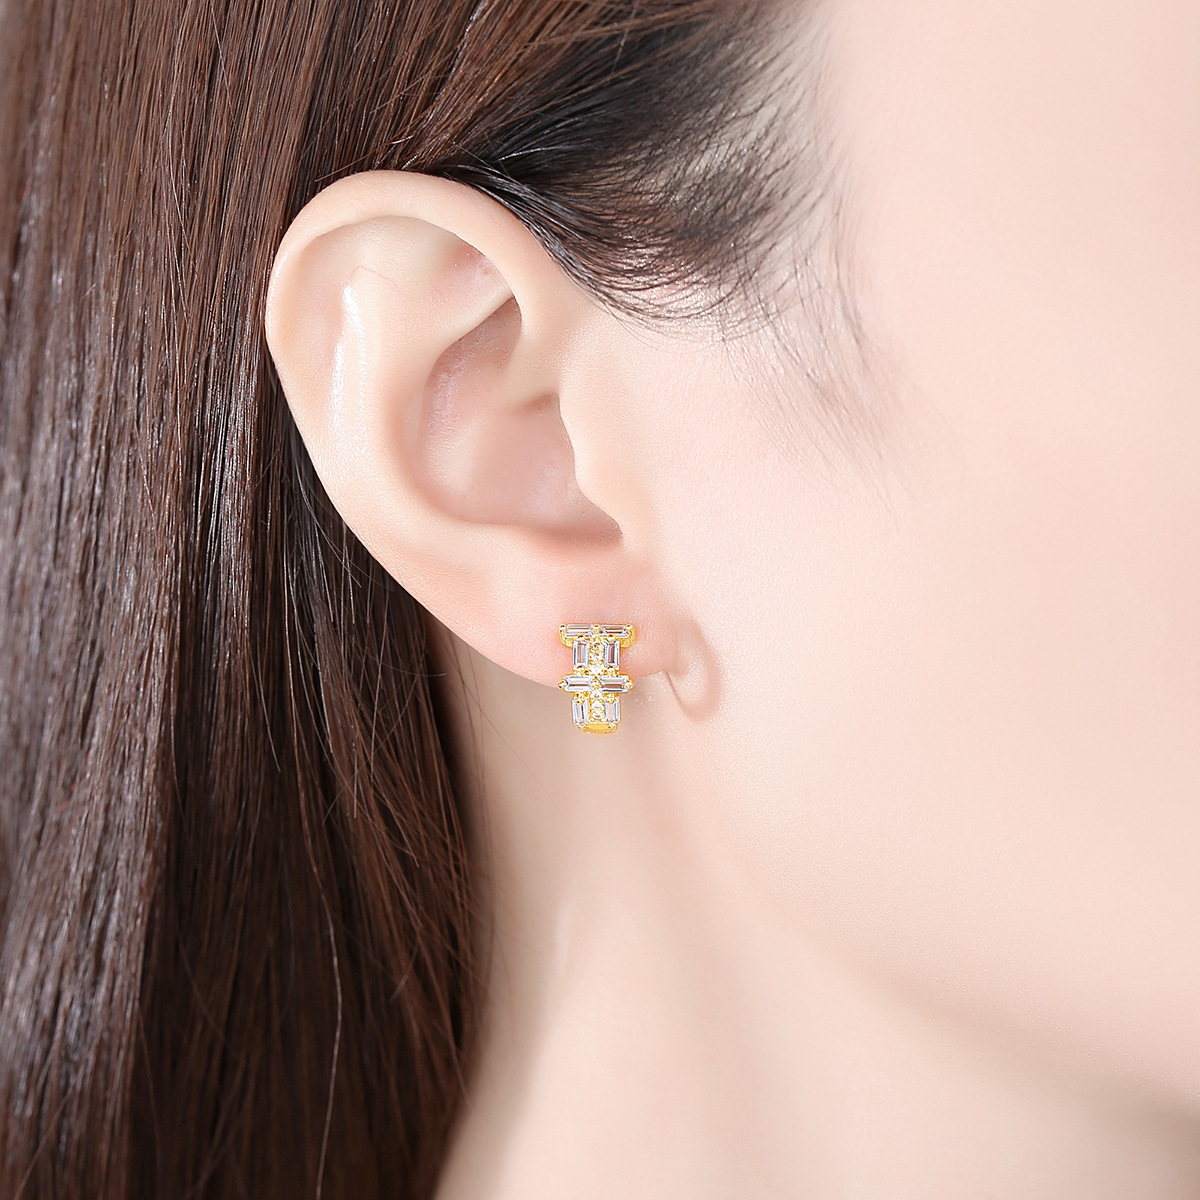 Simple earrings temperament stud earrings